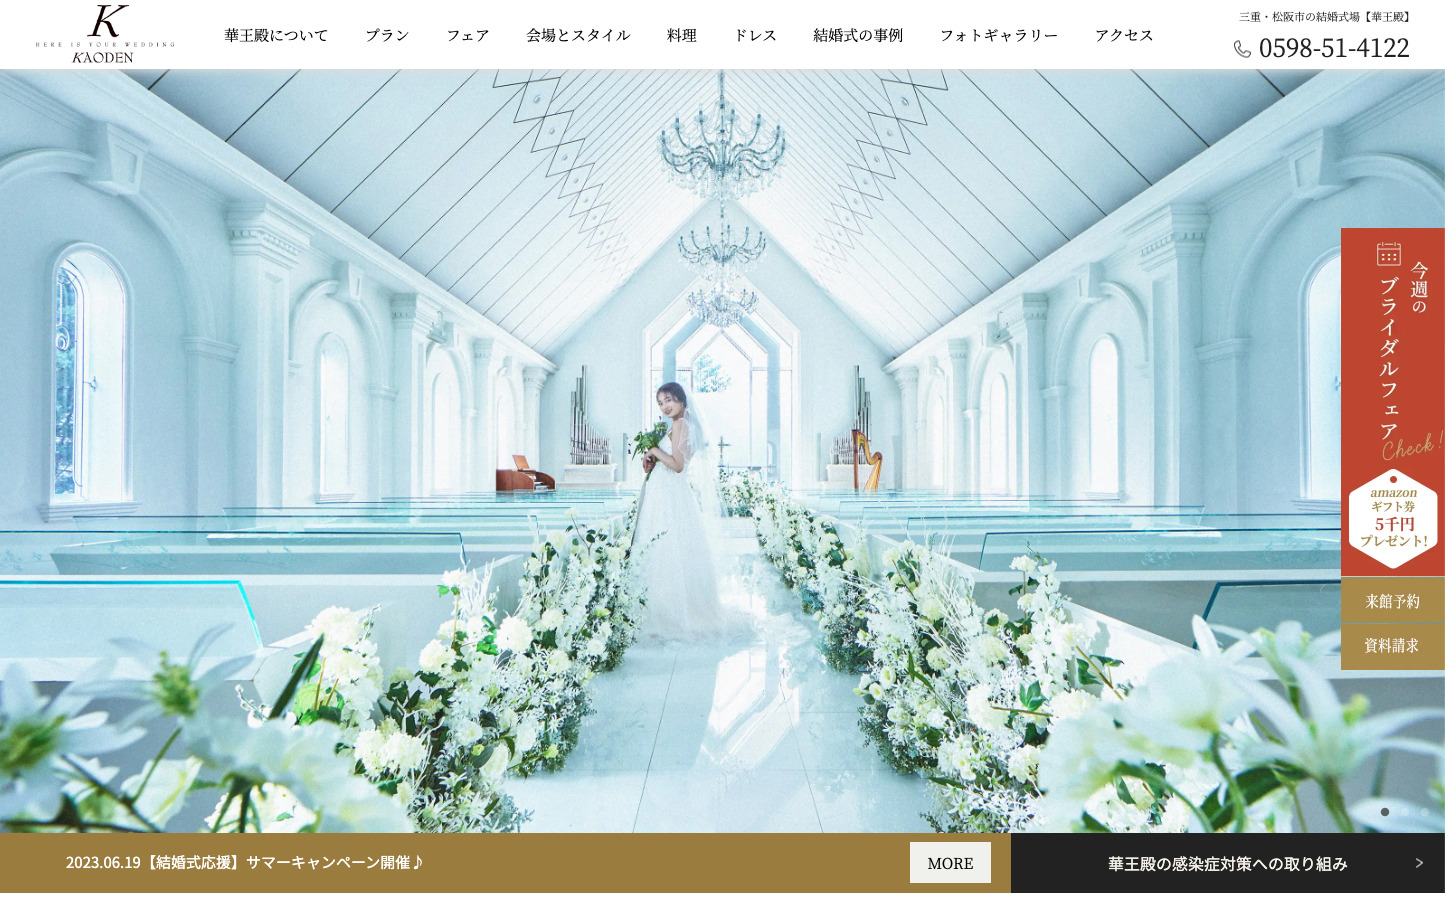 華王殿様ホームページ制作（結婚式場）のサムネイルその1